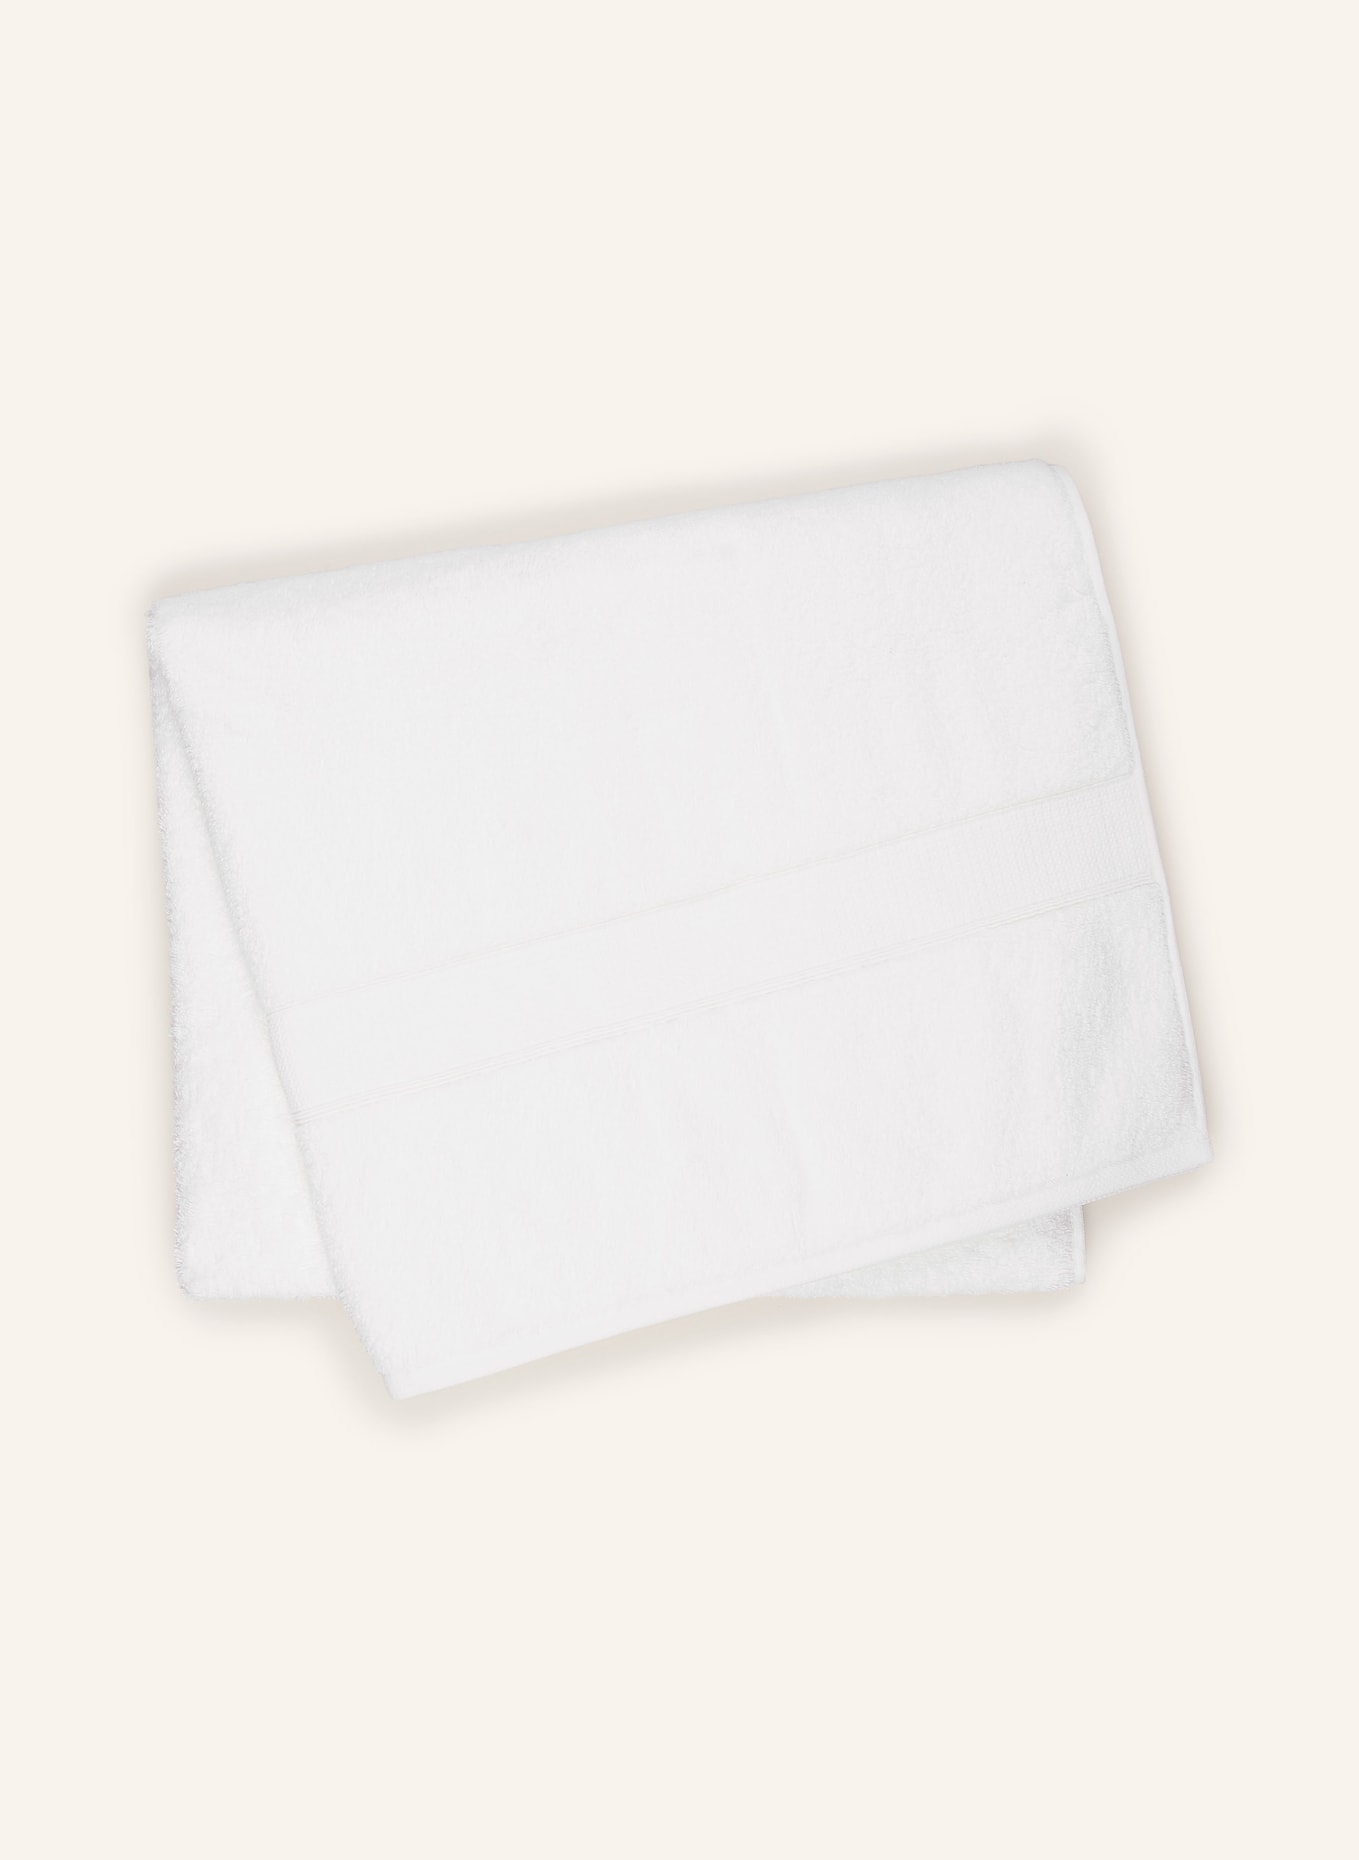 en VOGUE Towel AMERICA II, Color: WHITE (Image 2)